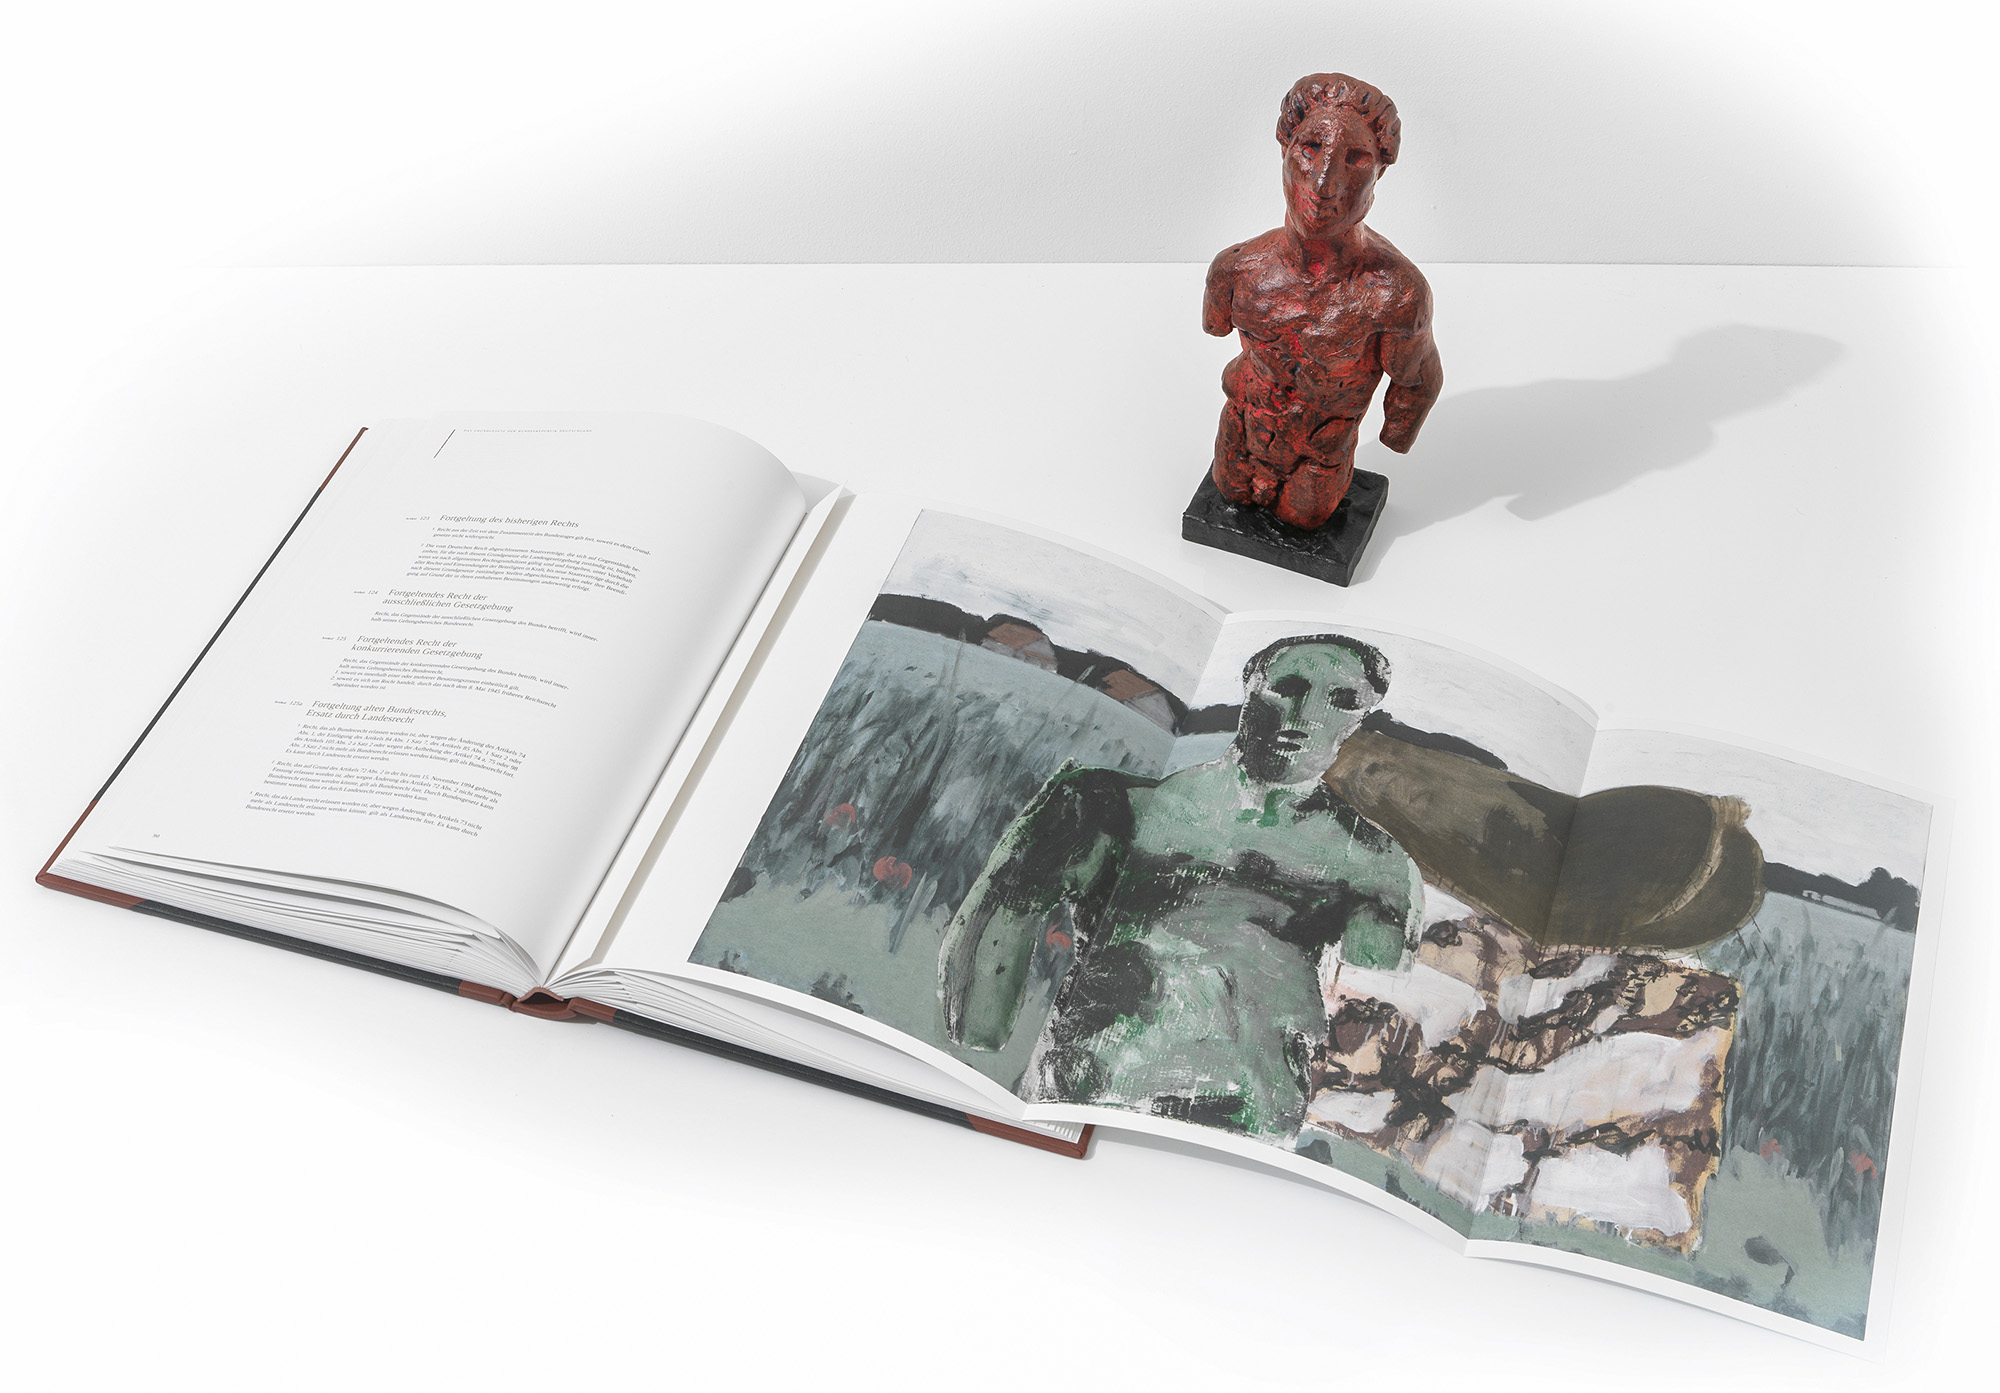 Skulptur & Buch "Das Grundgesetz" (2013), Bronze von Markus Lüpertz